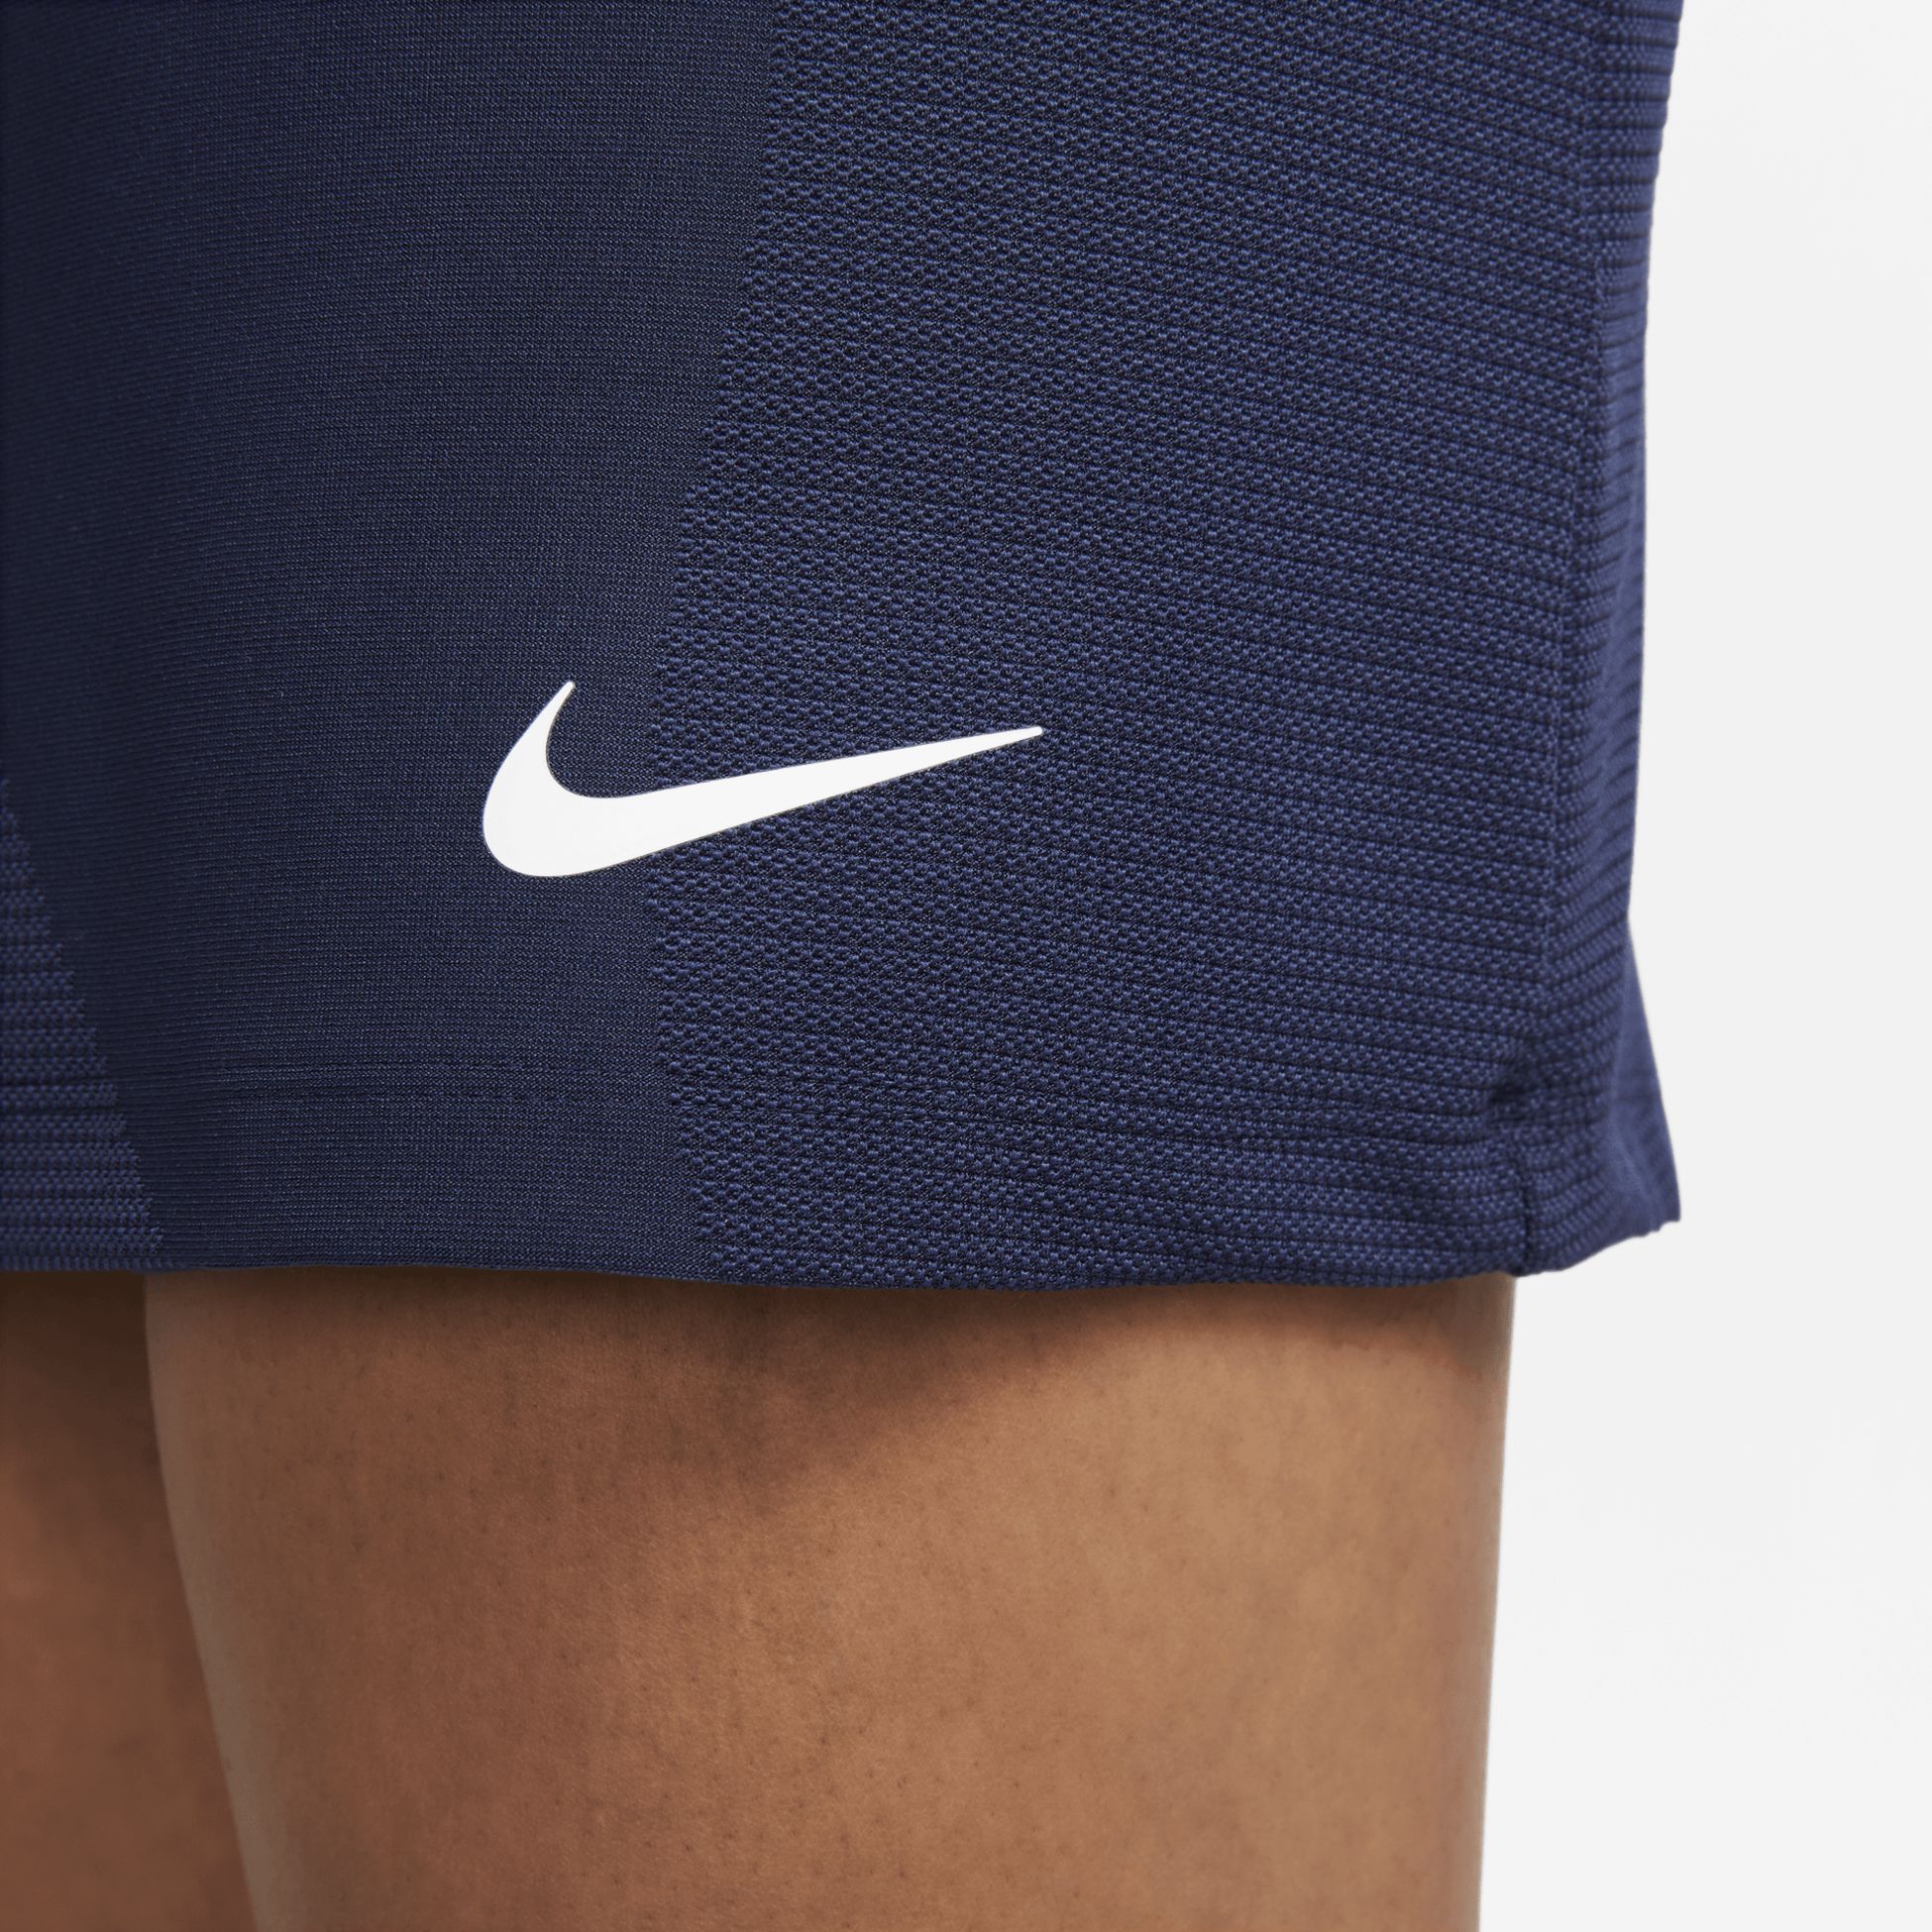 NIKE, Nike Tour Dri-FIT Women's UV Skirt